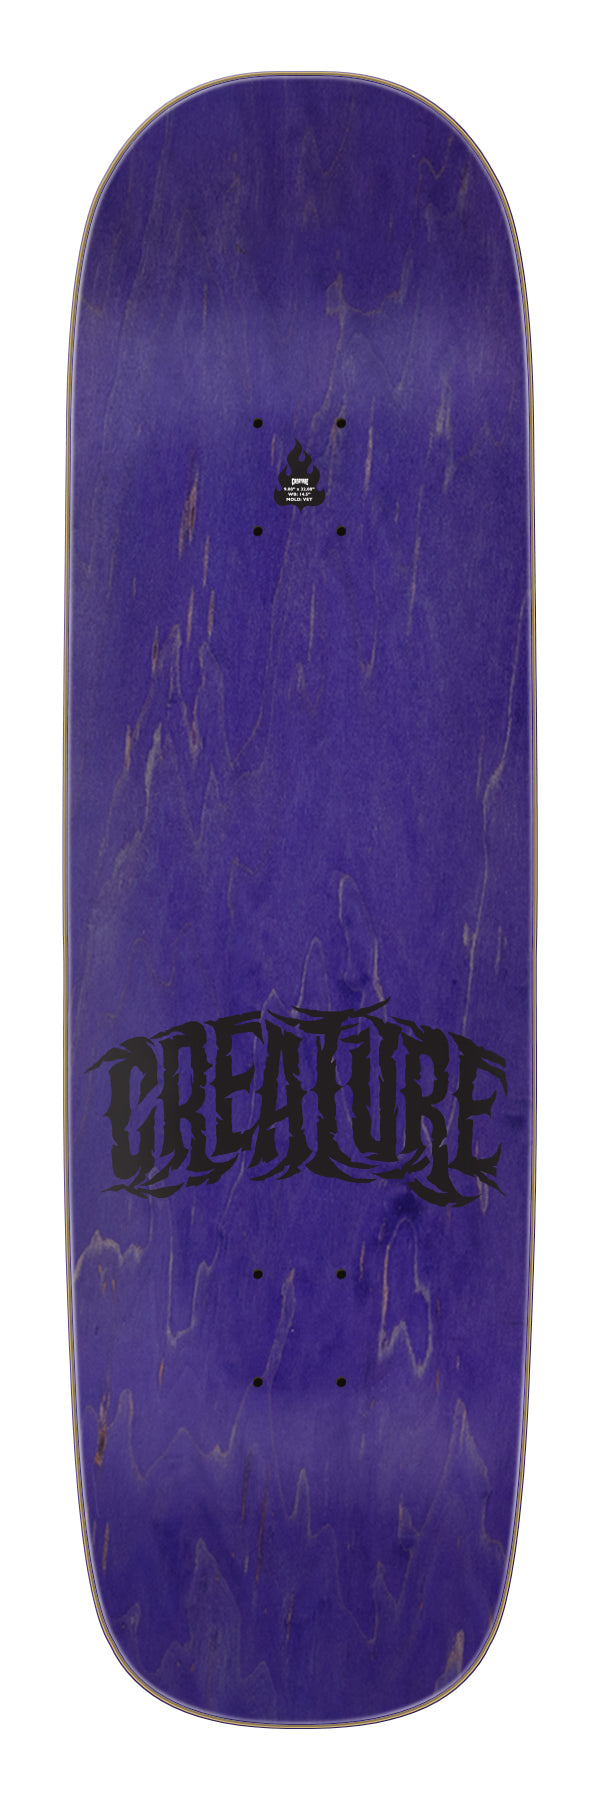 Creature - Tabla Hitz Battle Gate Pro 9.08x32.08 - Lo Mejor De Creature - Solo Por $41990! Compra Ahora En Wallride Skateshop